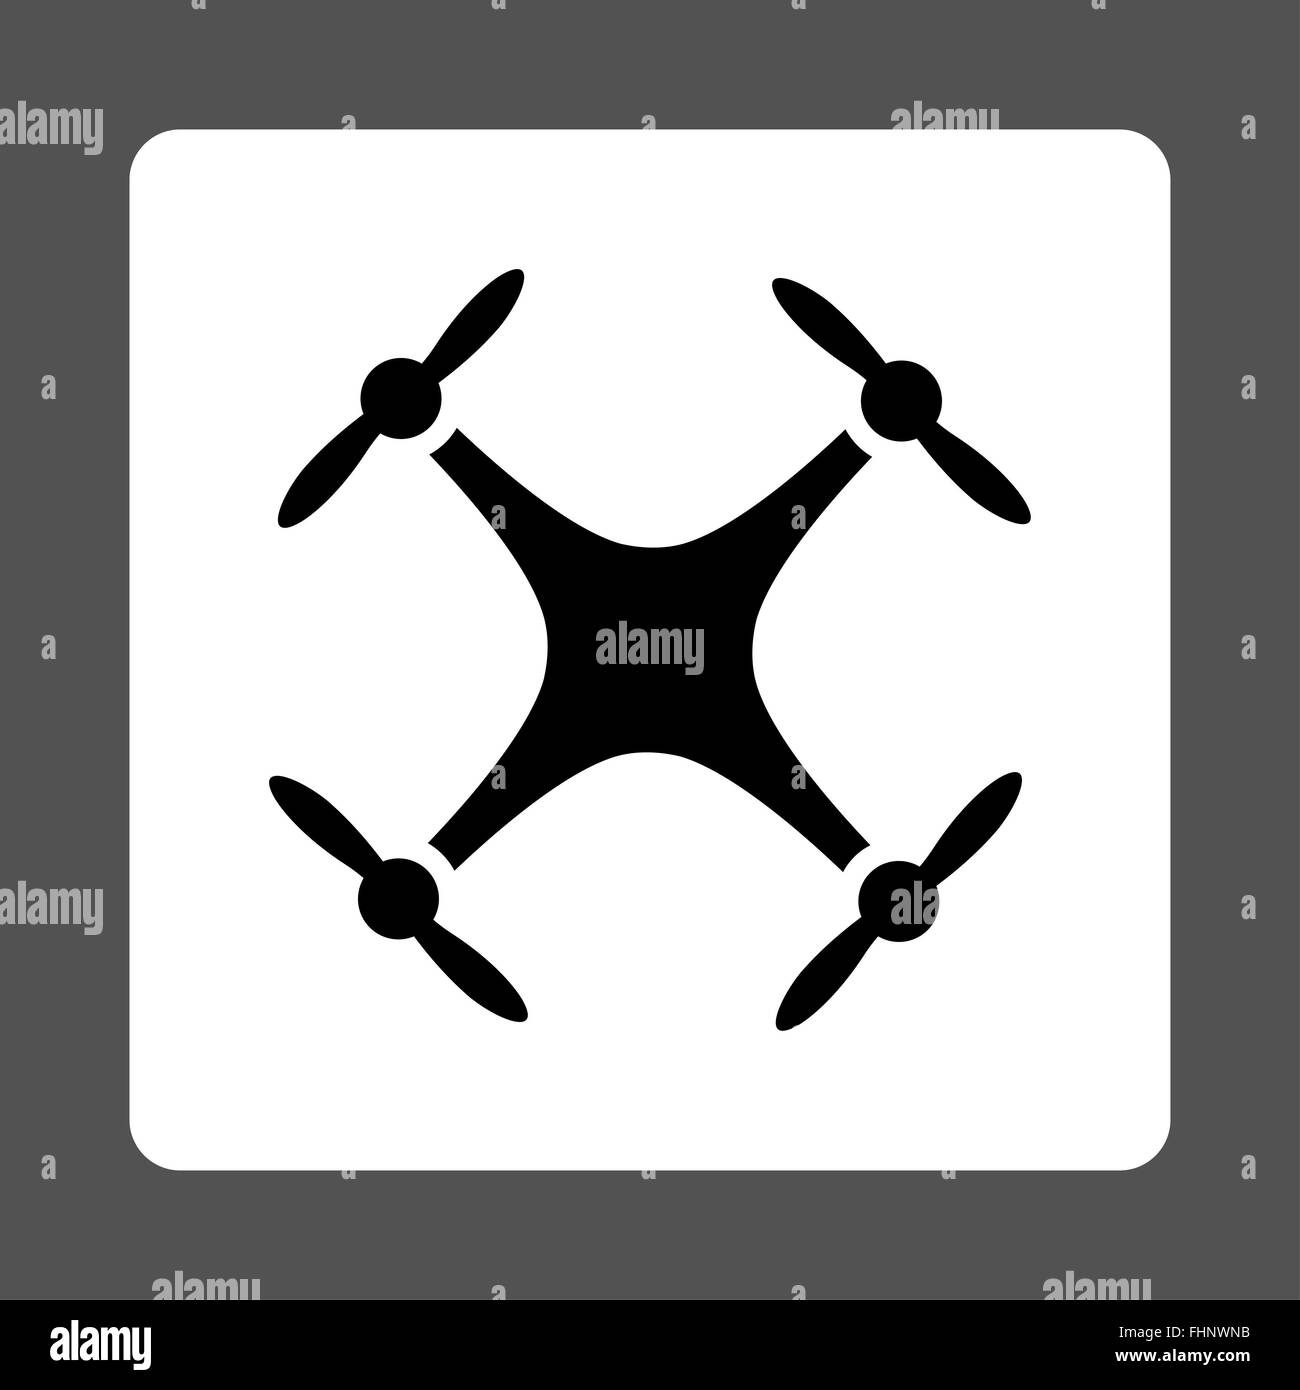 Quadcopter icon Stock Photo